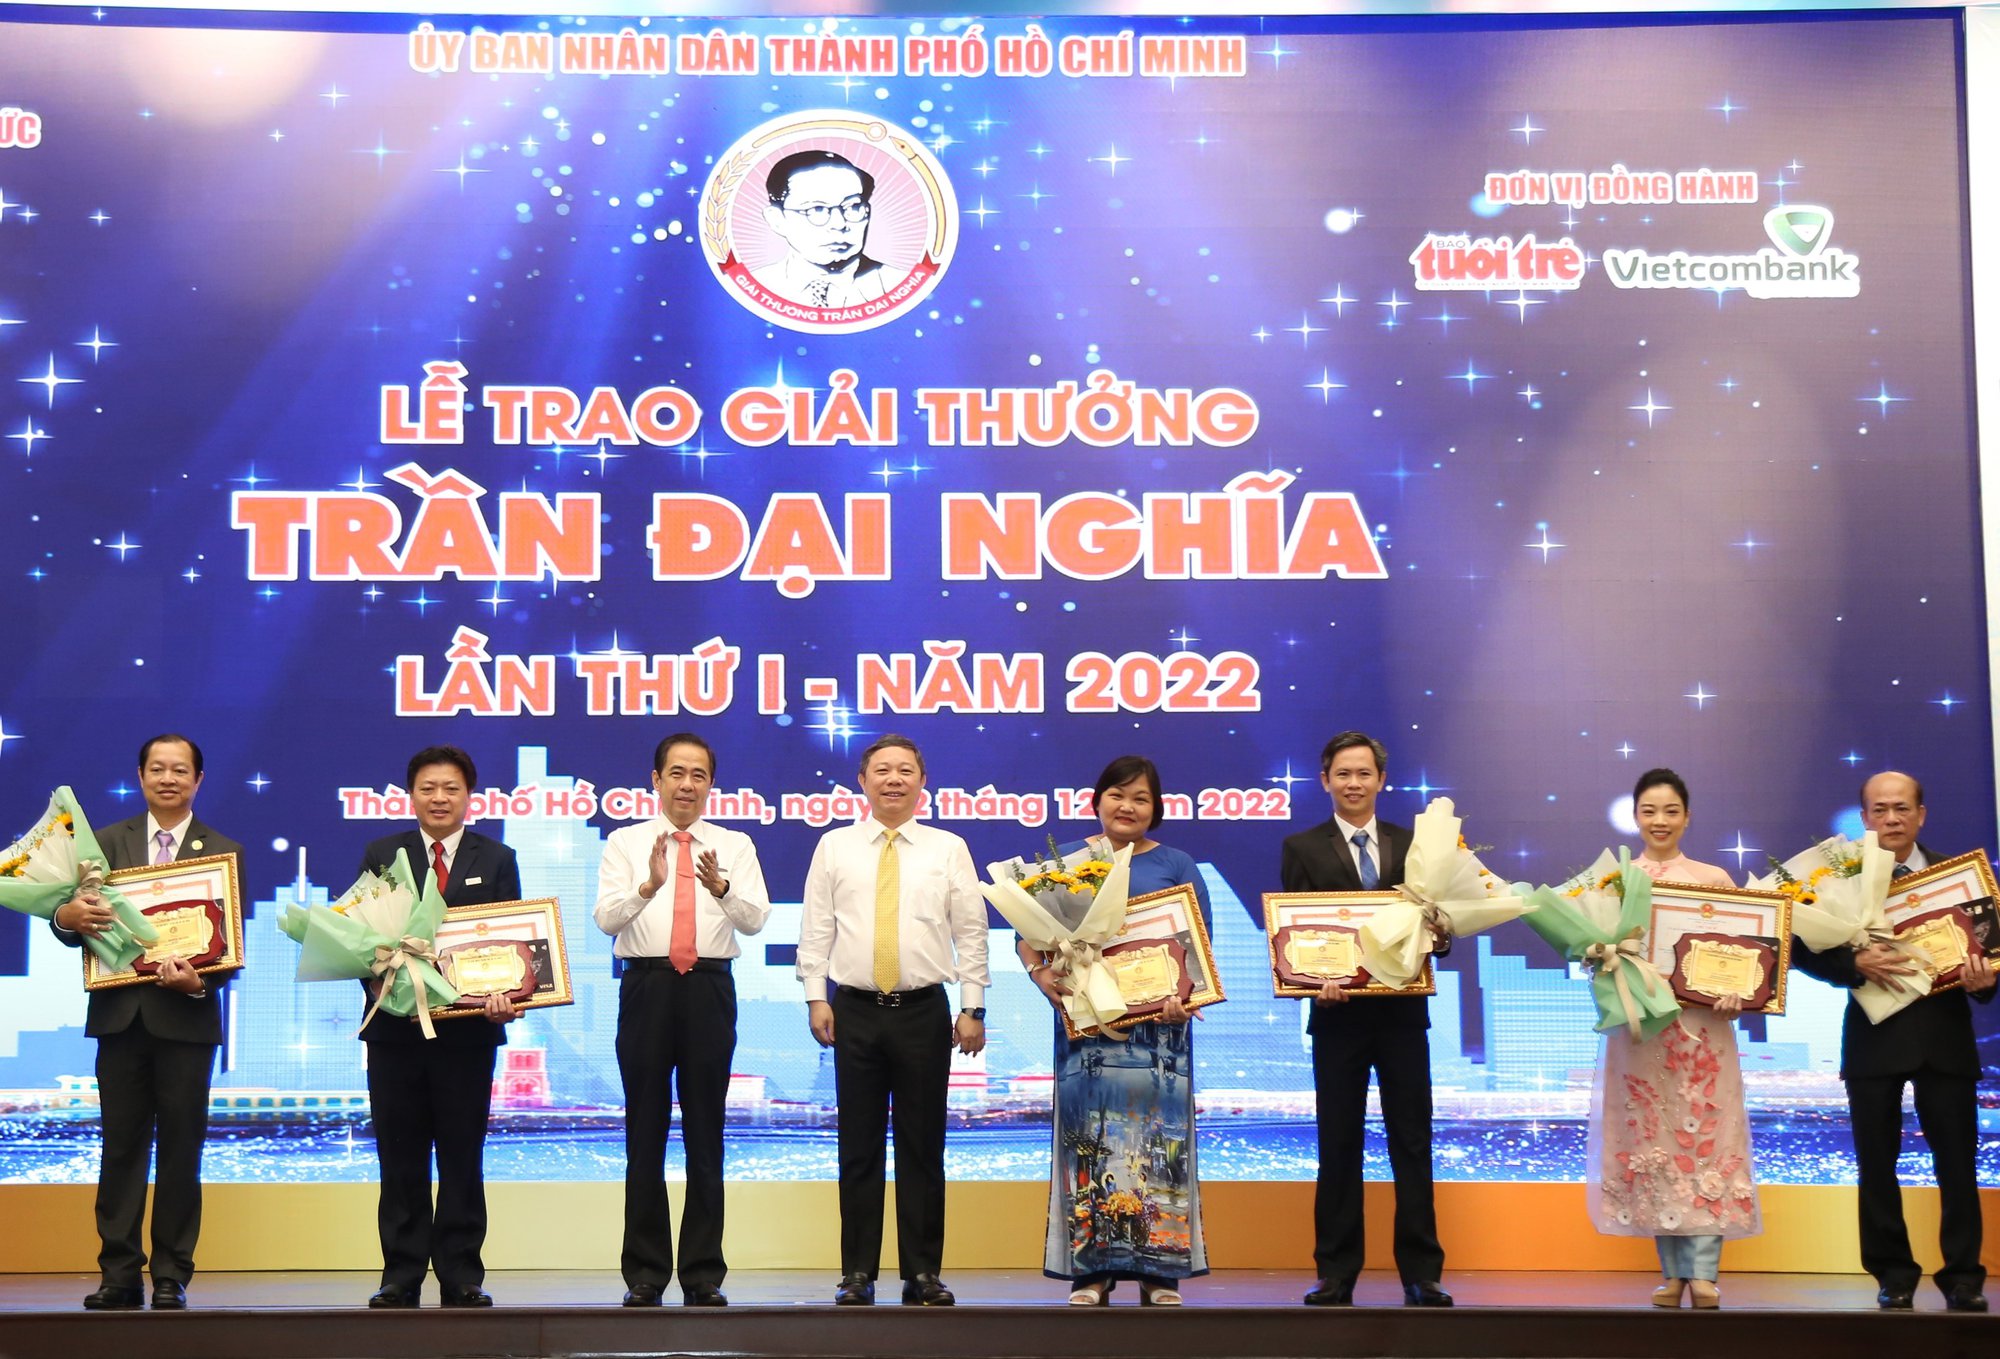 Vinh danh 12 nhà giáo, cán bộ quản lý đoạt giải thưởng Trần Đại Nghĩa lần thứ nhất - Ảnh 2.